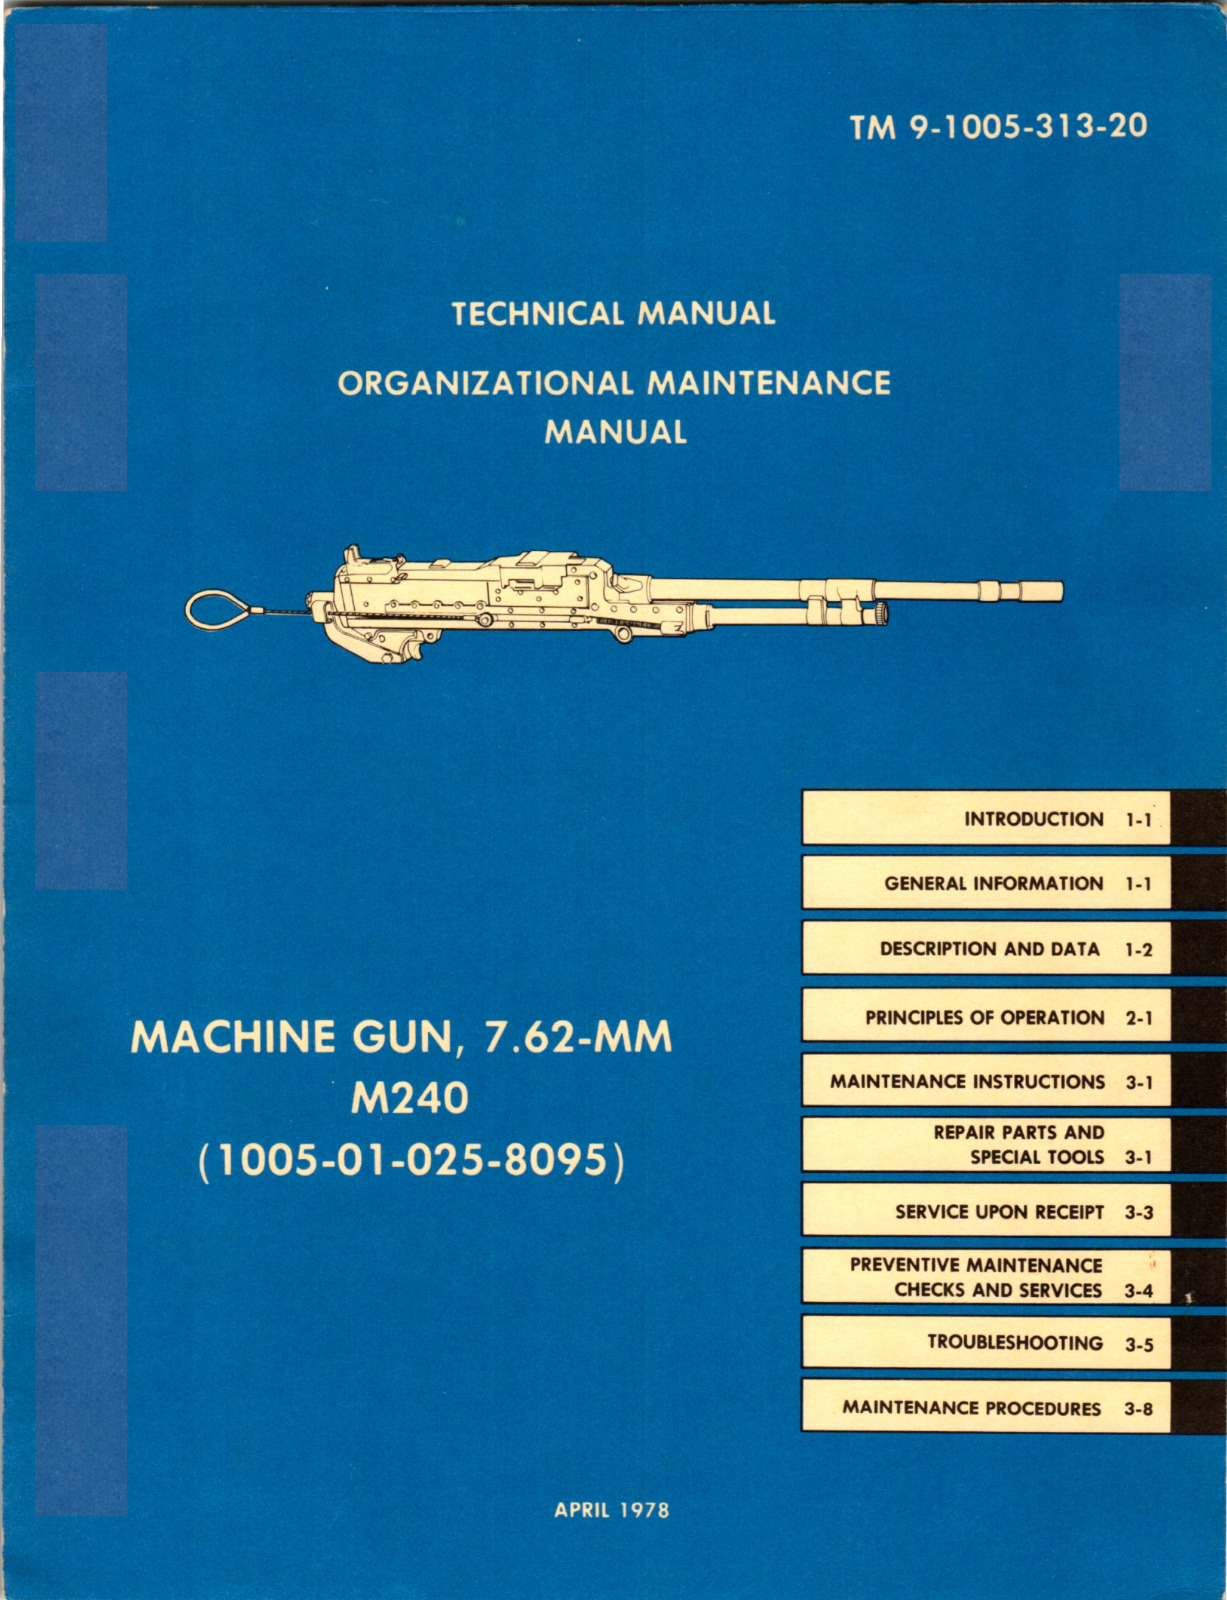 68 Page TM 9-1005-313-20 MACHINE GUN 7.62-MM M240 Maintenance Manual on Data CD